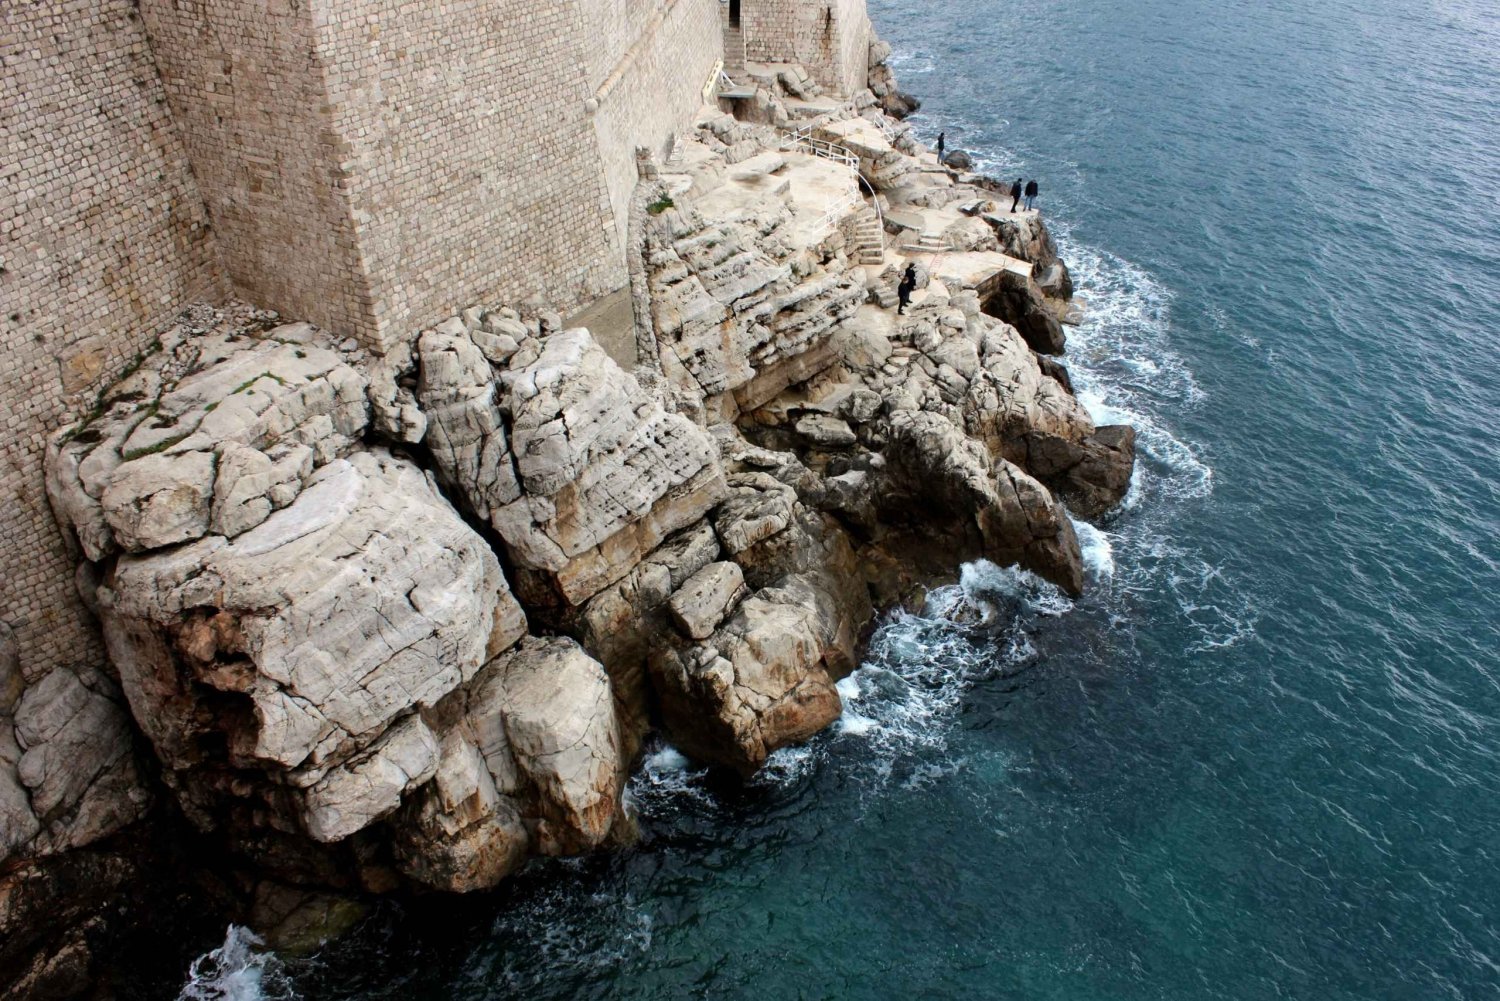 Dubrovnik: 45 minuutin panoraamaristeilykierros